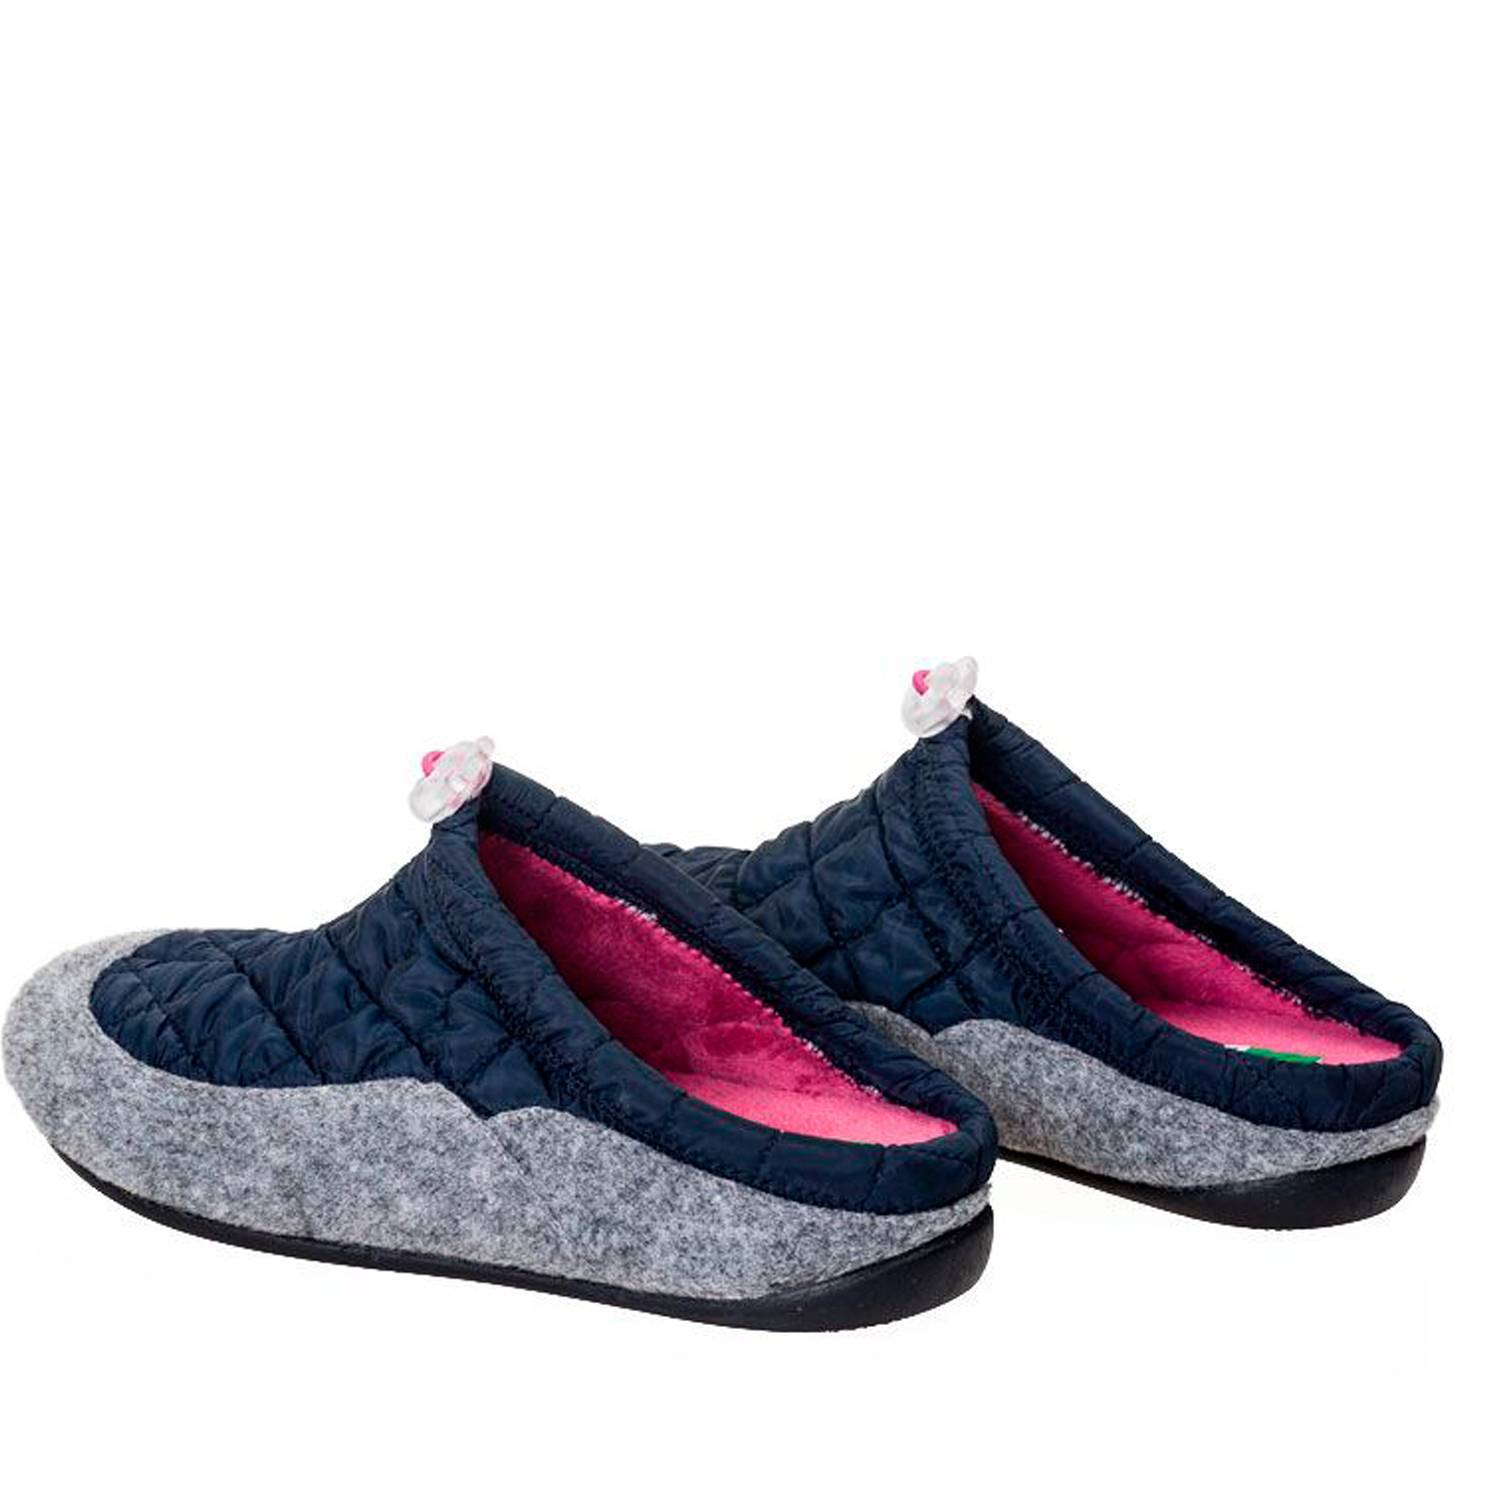 Zapatillas de casa de mujer destalonadas en color azul marino con tela acolchada. Parte inferior en felpa. Se adapta perfectamente al pie y es muy cómoda gracias a su suela flexible y ligera.